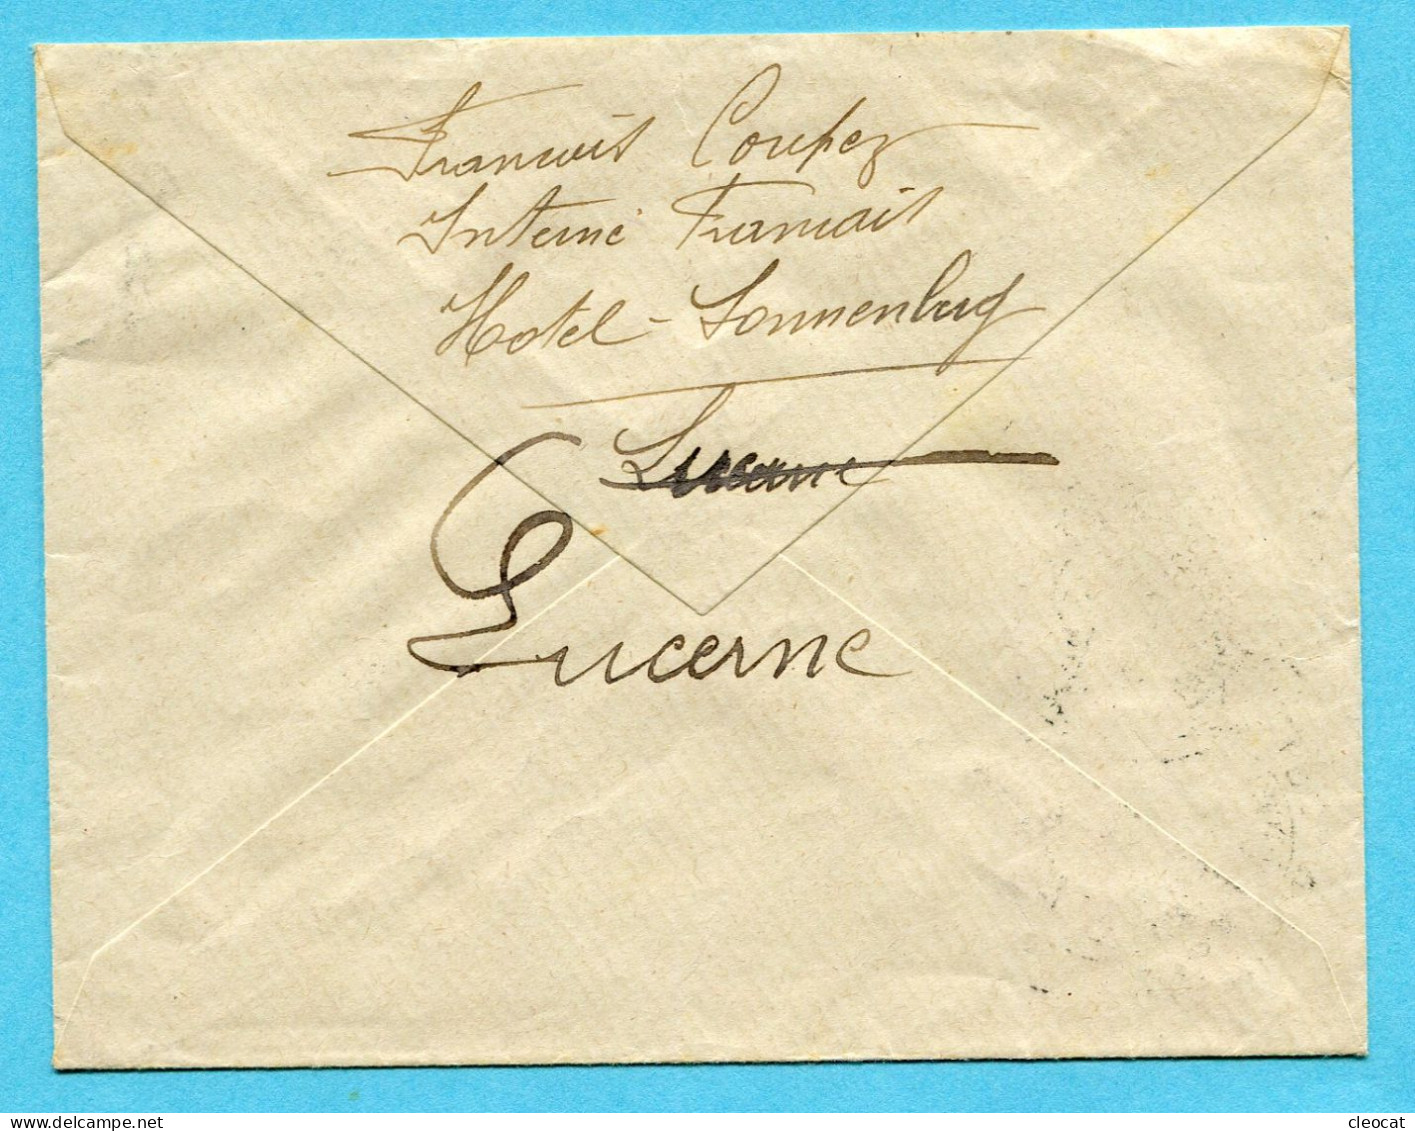 Brief Kriens 1916 - Gestempelt Internement Des Prisonniers De Guerre Sonnenberg / Kriens - Documenten